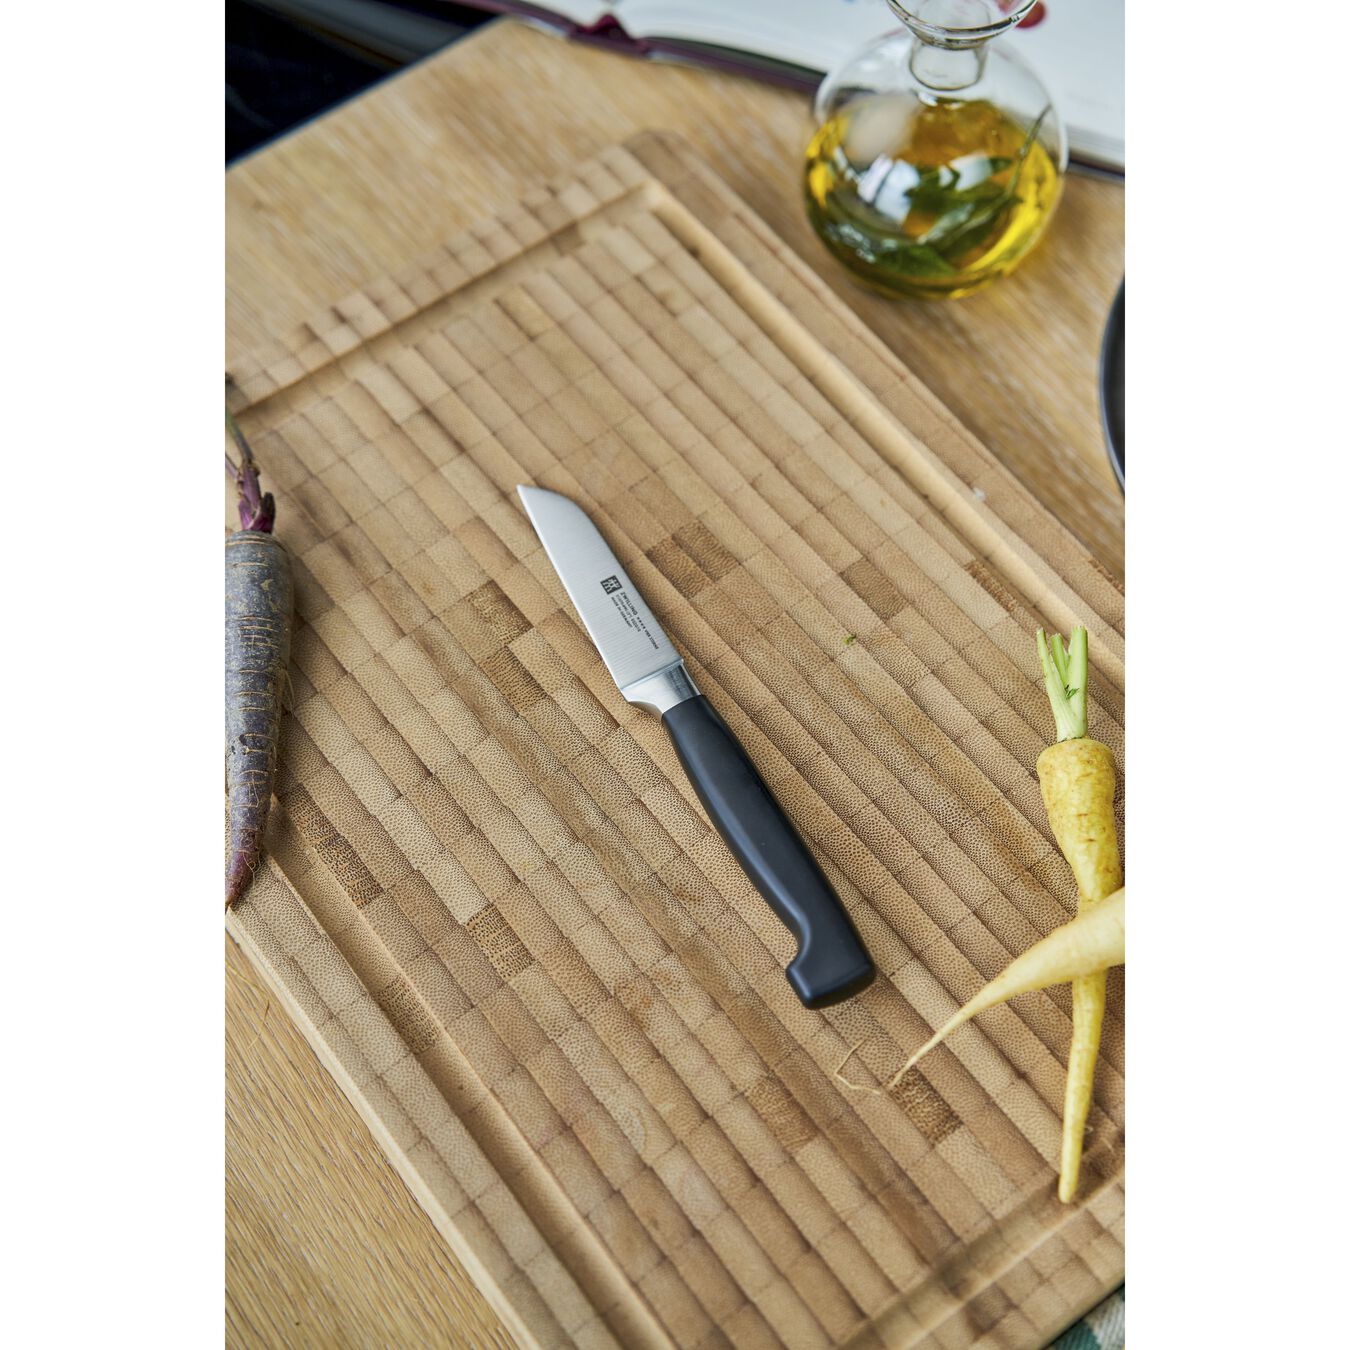 Sebze Meyve Bıçağı | Özel Formül Çelik | 8 cm,,large 3